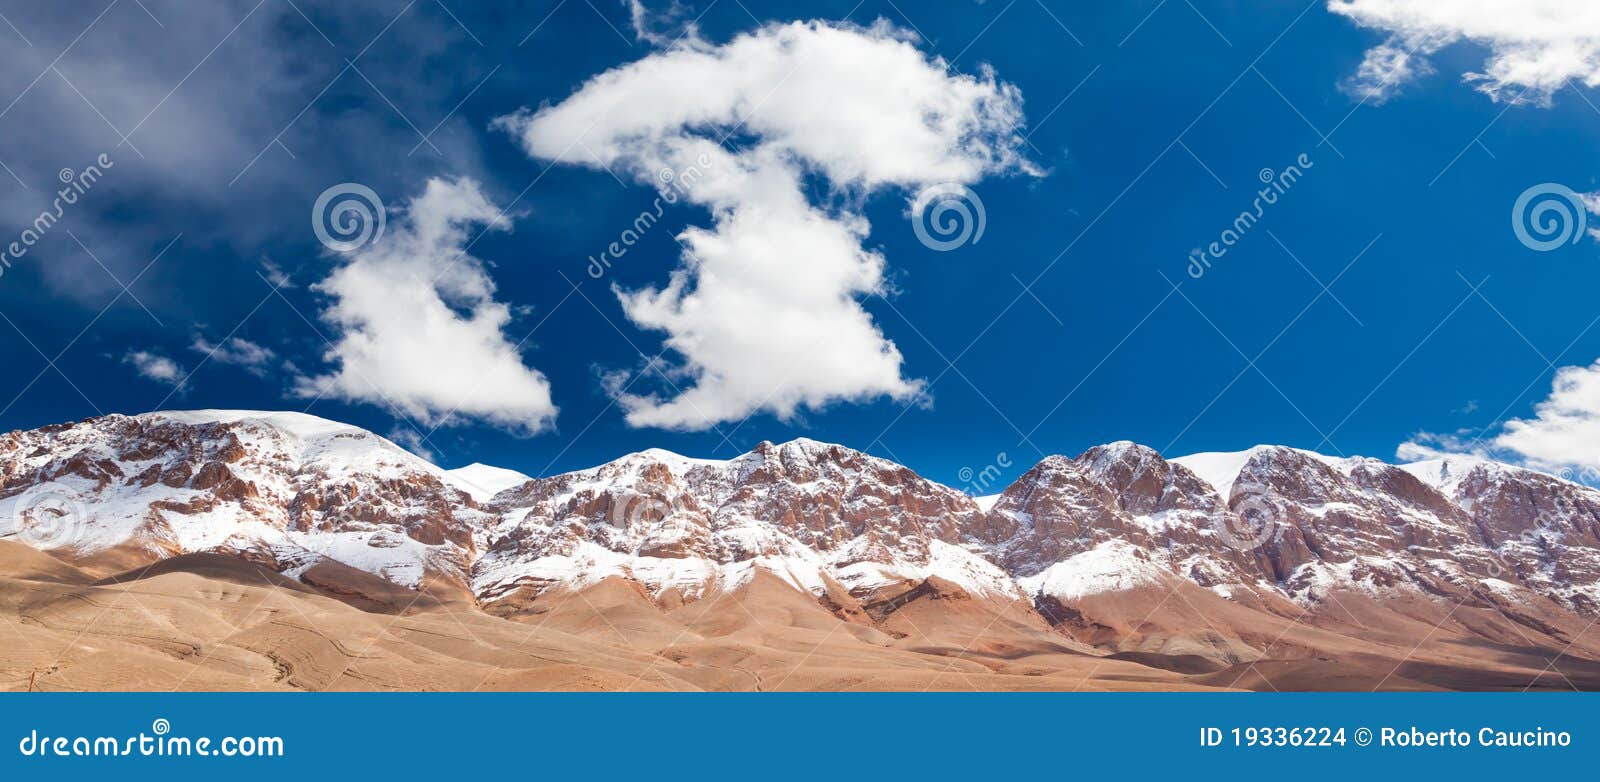 maroc mountain